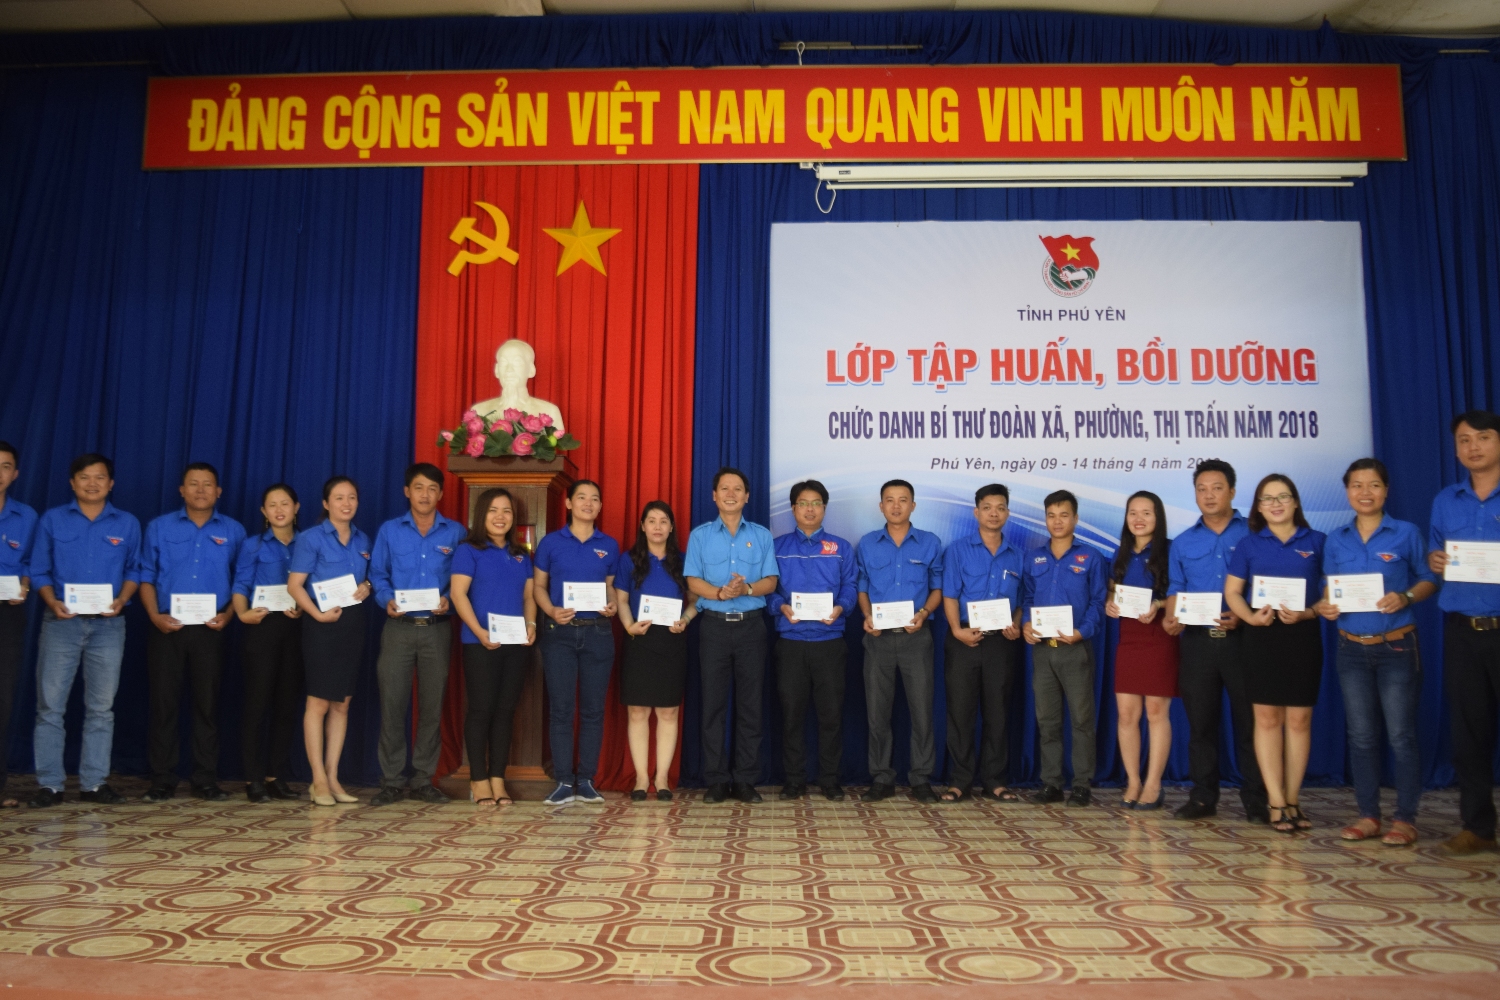 Phó Bí thư Tỉnh Đoàn Lương Minh Tùng trao giấy công nhận cho các học viên.